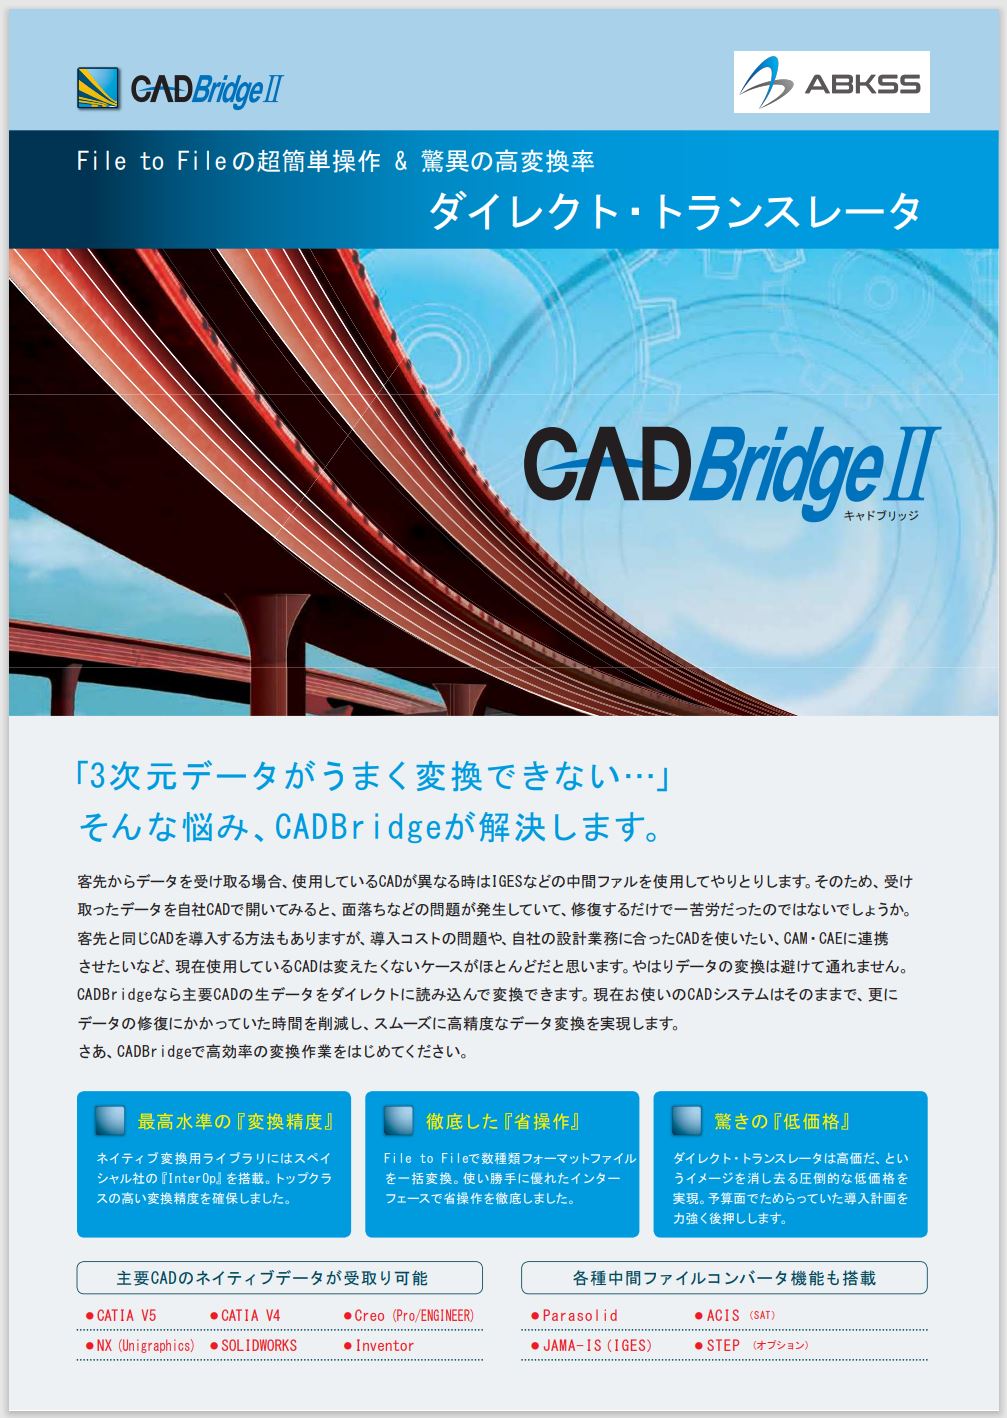 cadbridgeⅡ